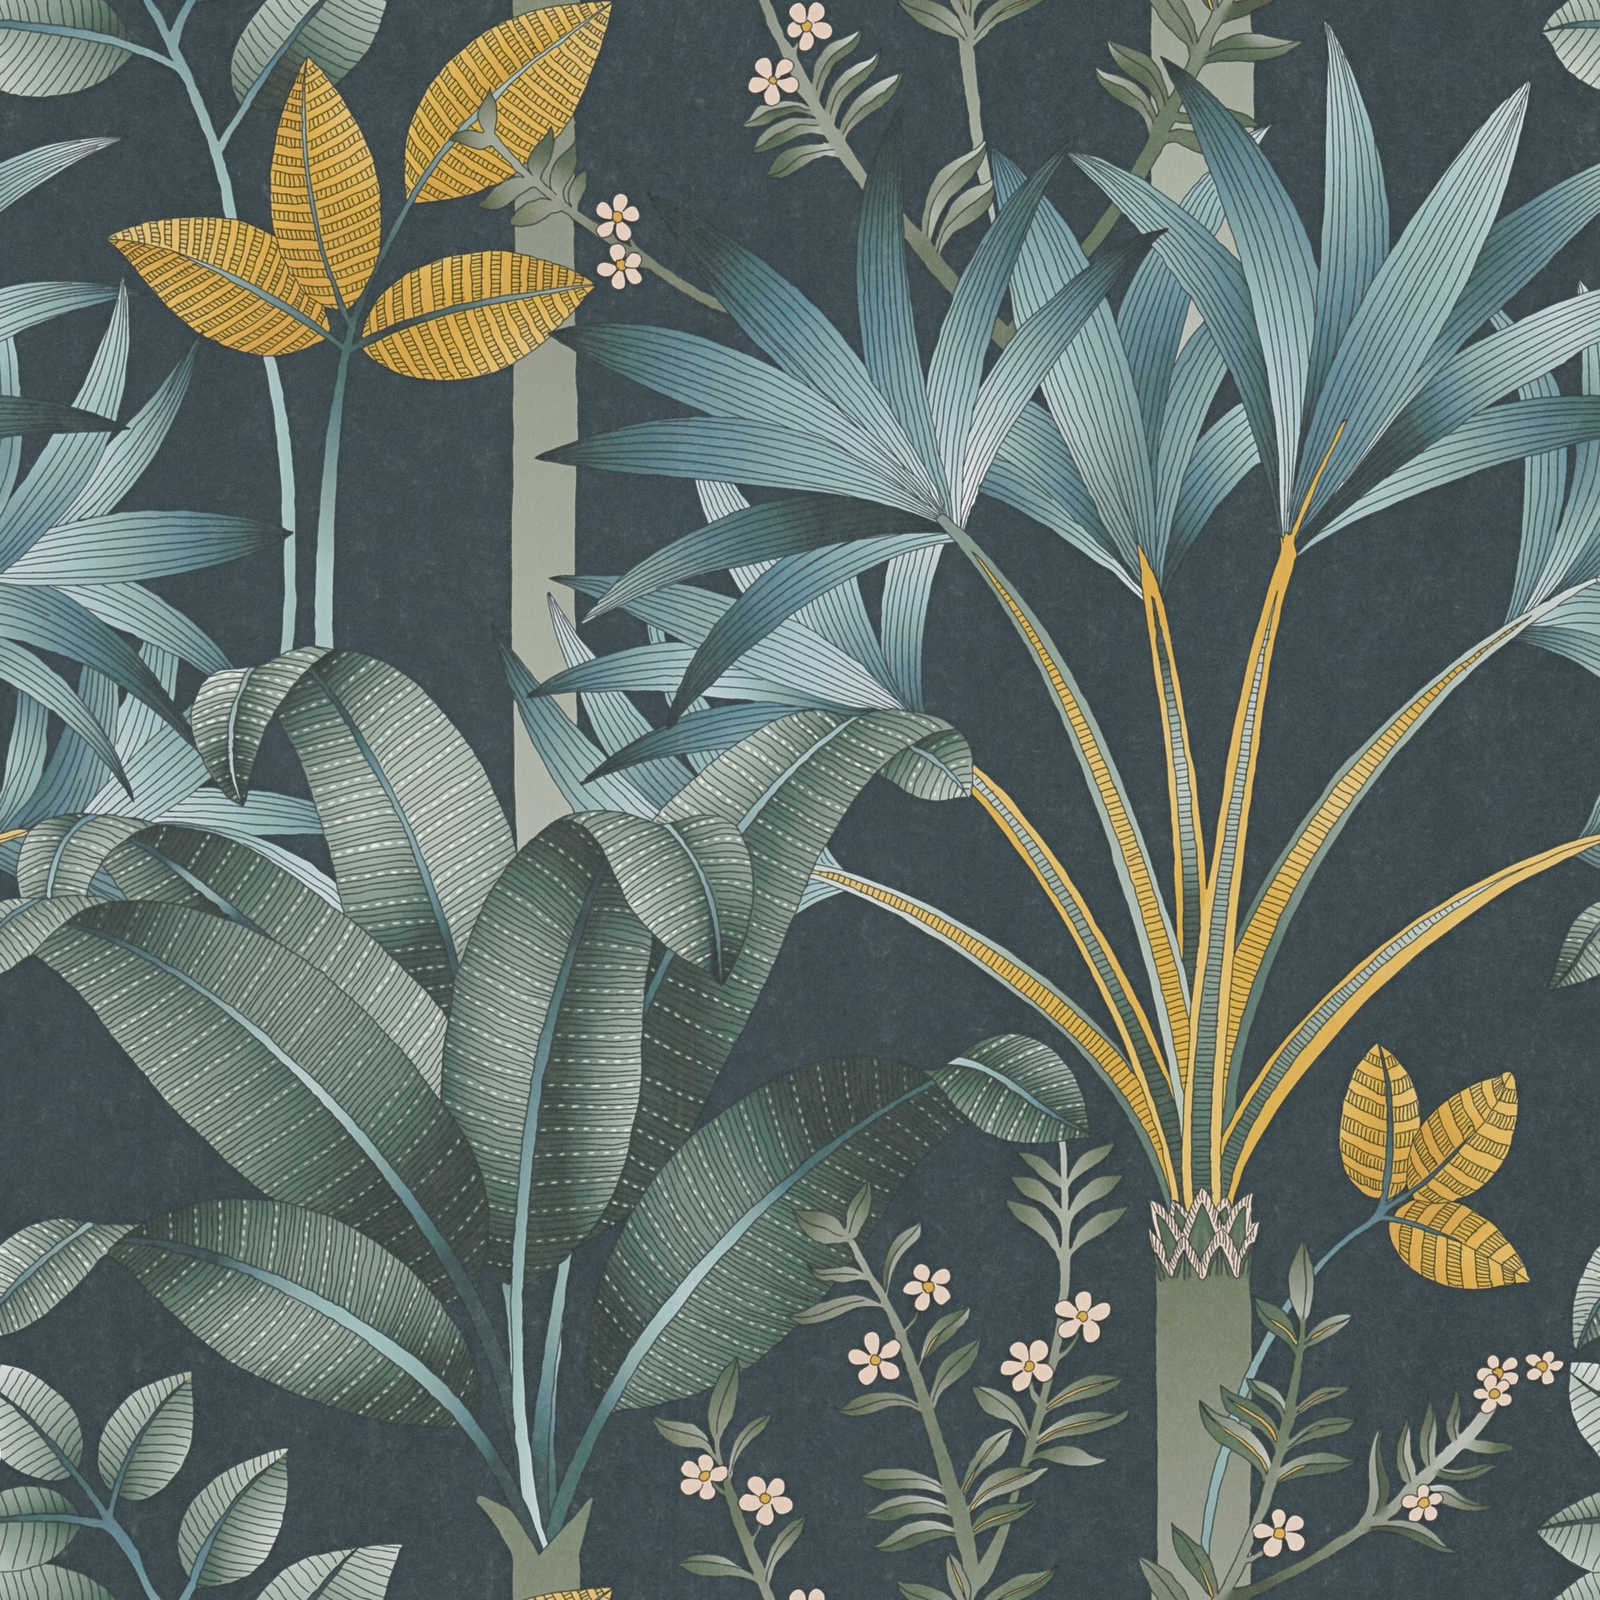 Papier peint intissé floral avec motif de feuilles - multicolore, pétrole, vert
